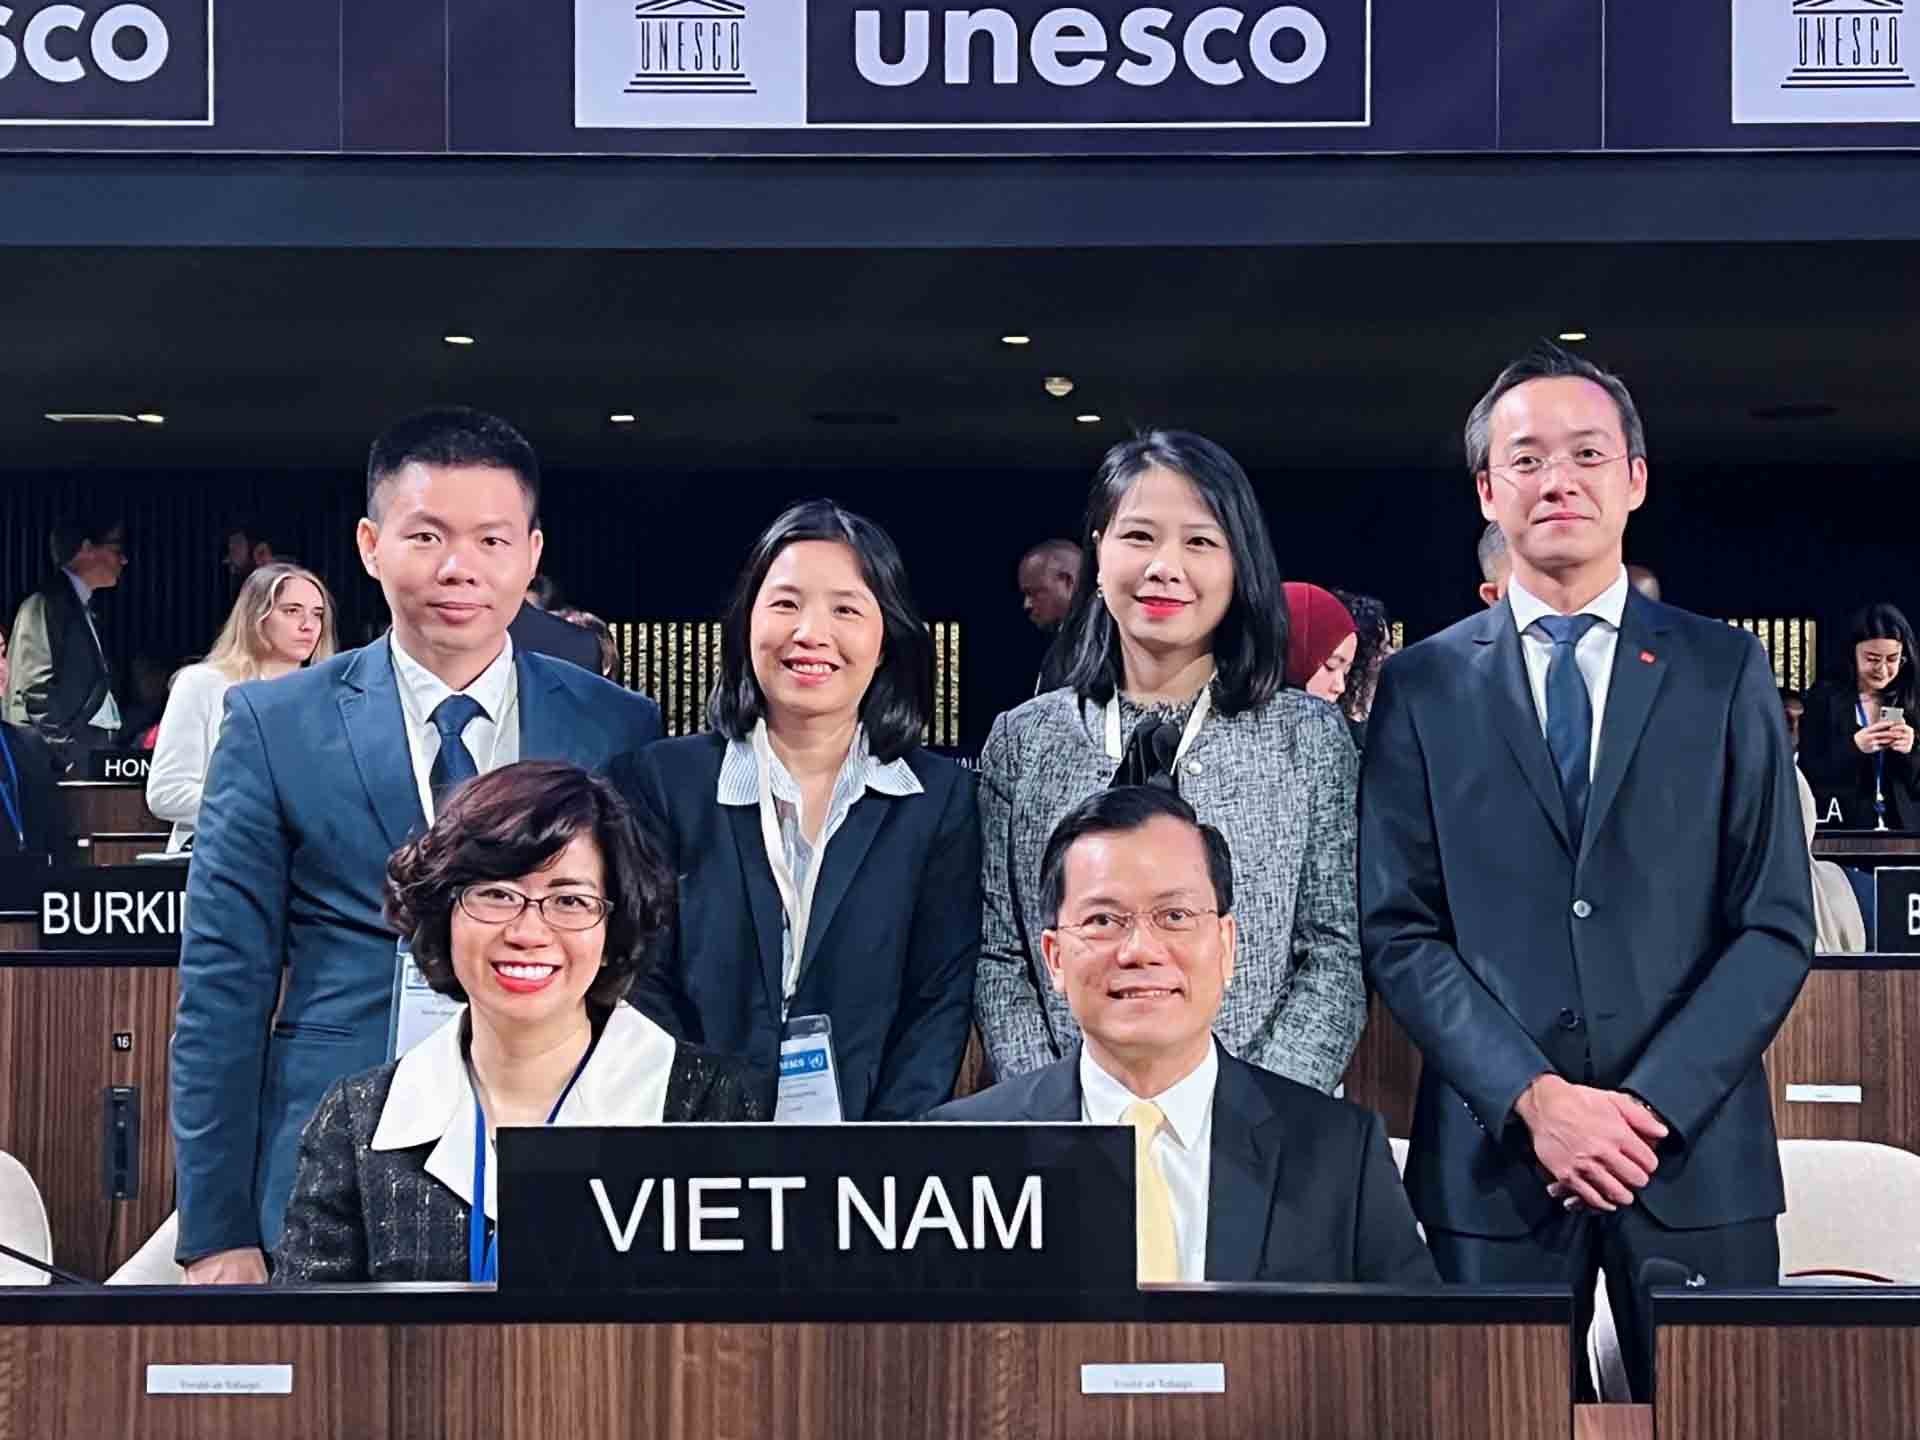 Đoàn Việt Nam tham dự Kỳ họp lần thứ 42 Đại hội đồng UNESCO (Nguồn: Đoàn công tác)